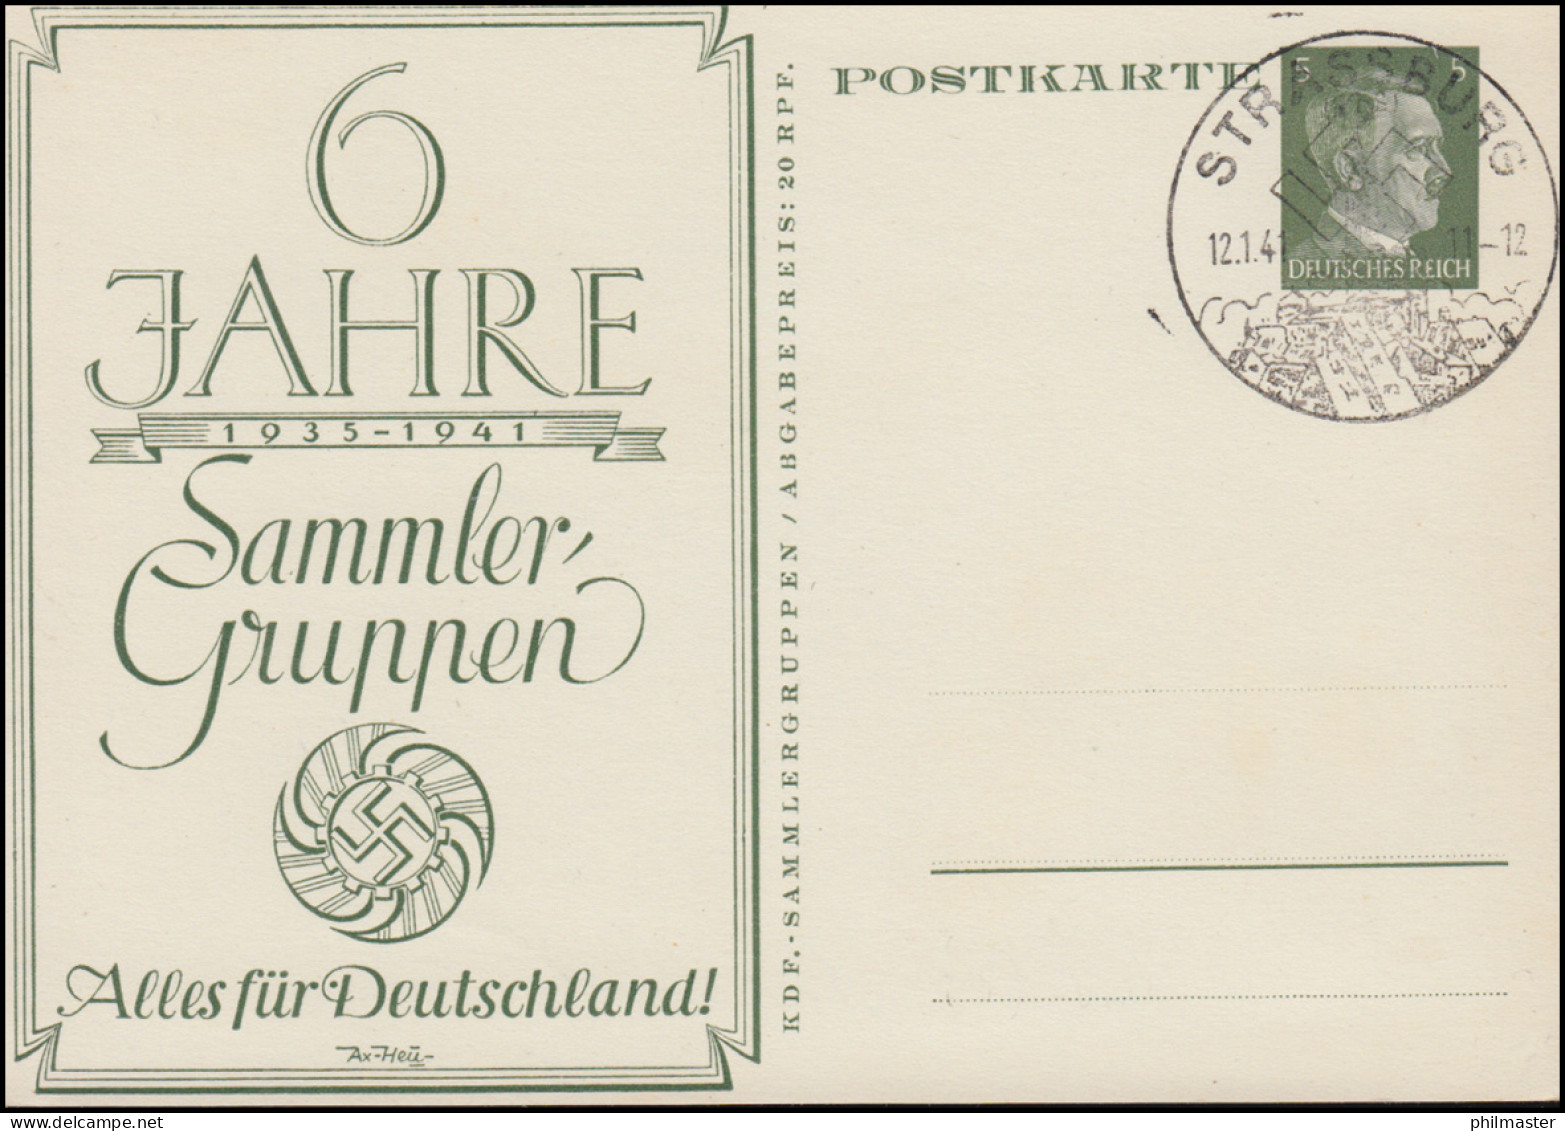 P 154 Alles Für Deutschland 60 Jahre Sammler-Guppen SSt STRASSBURG 12.1.1941 - Philatelic Exhibitions